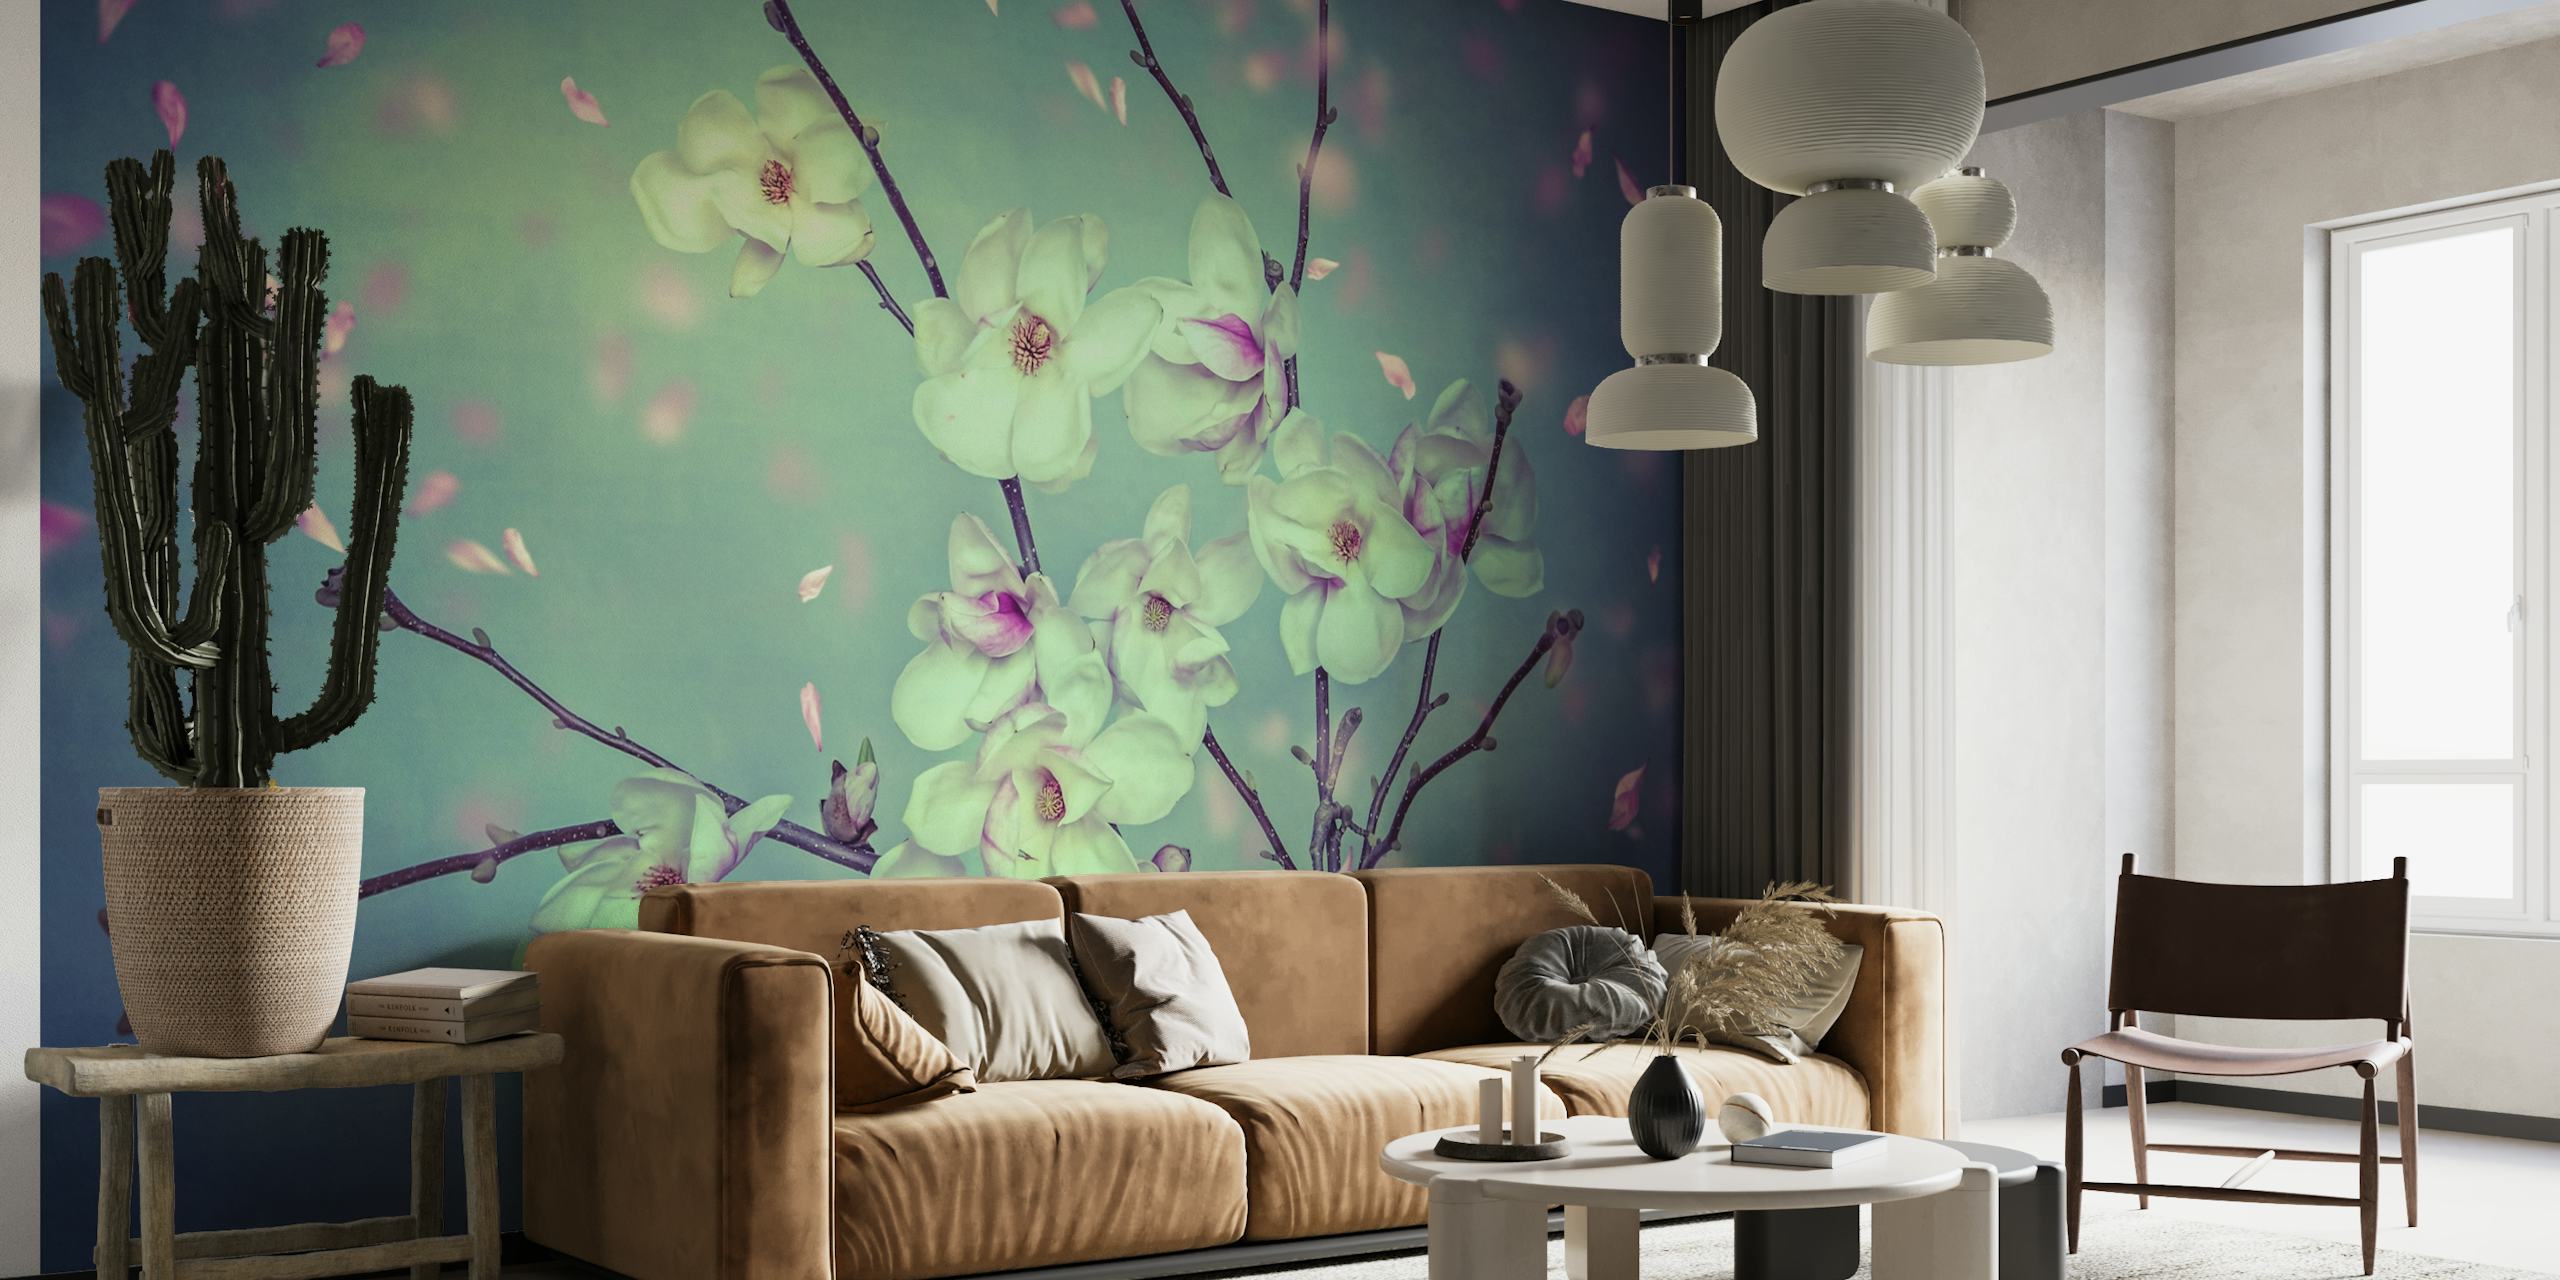 Fototapete mit ätherischen Magnolienblüten in einer ruhigen Frühlingsumgebung